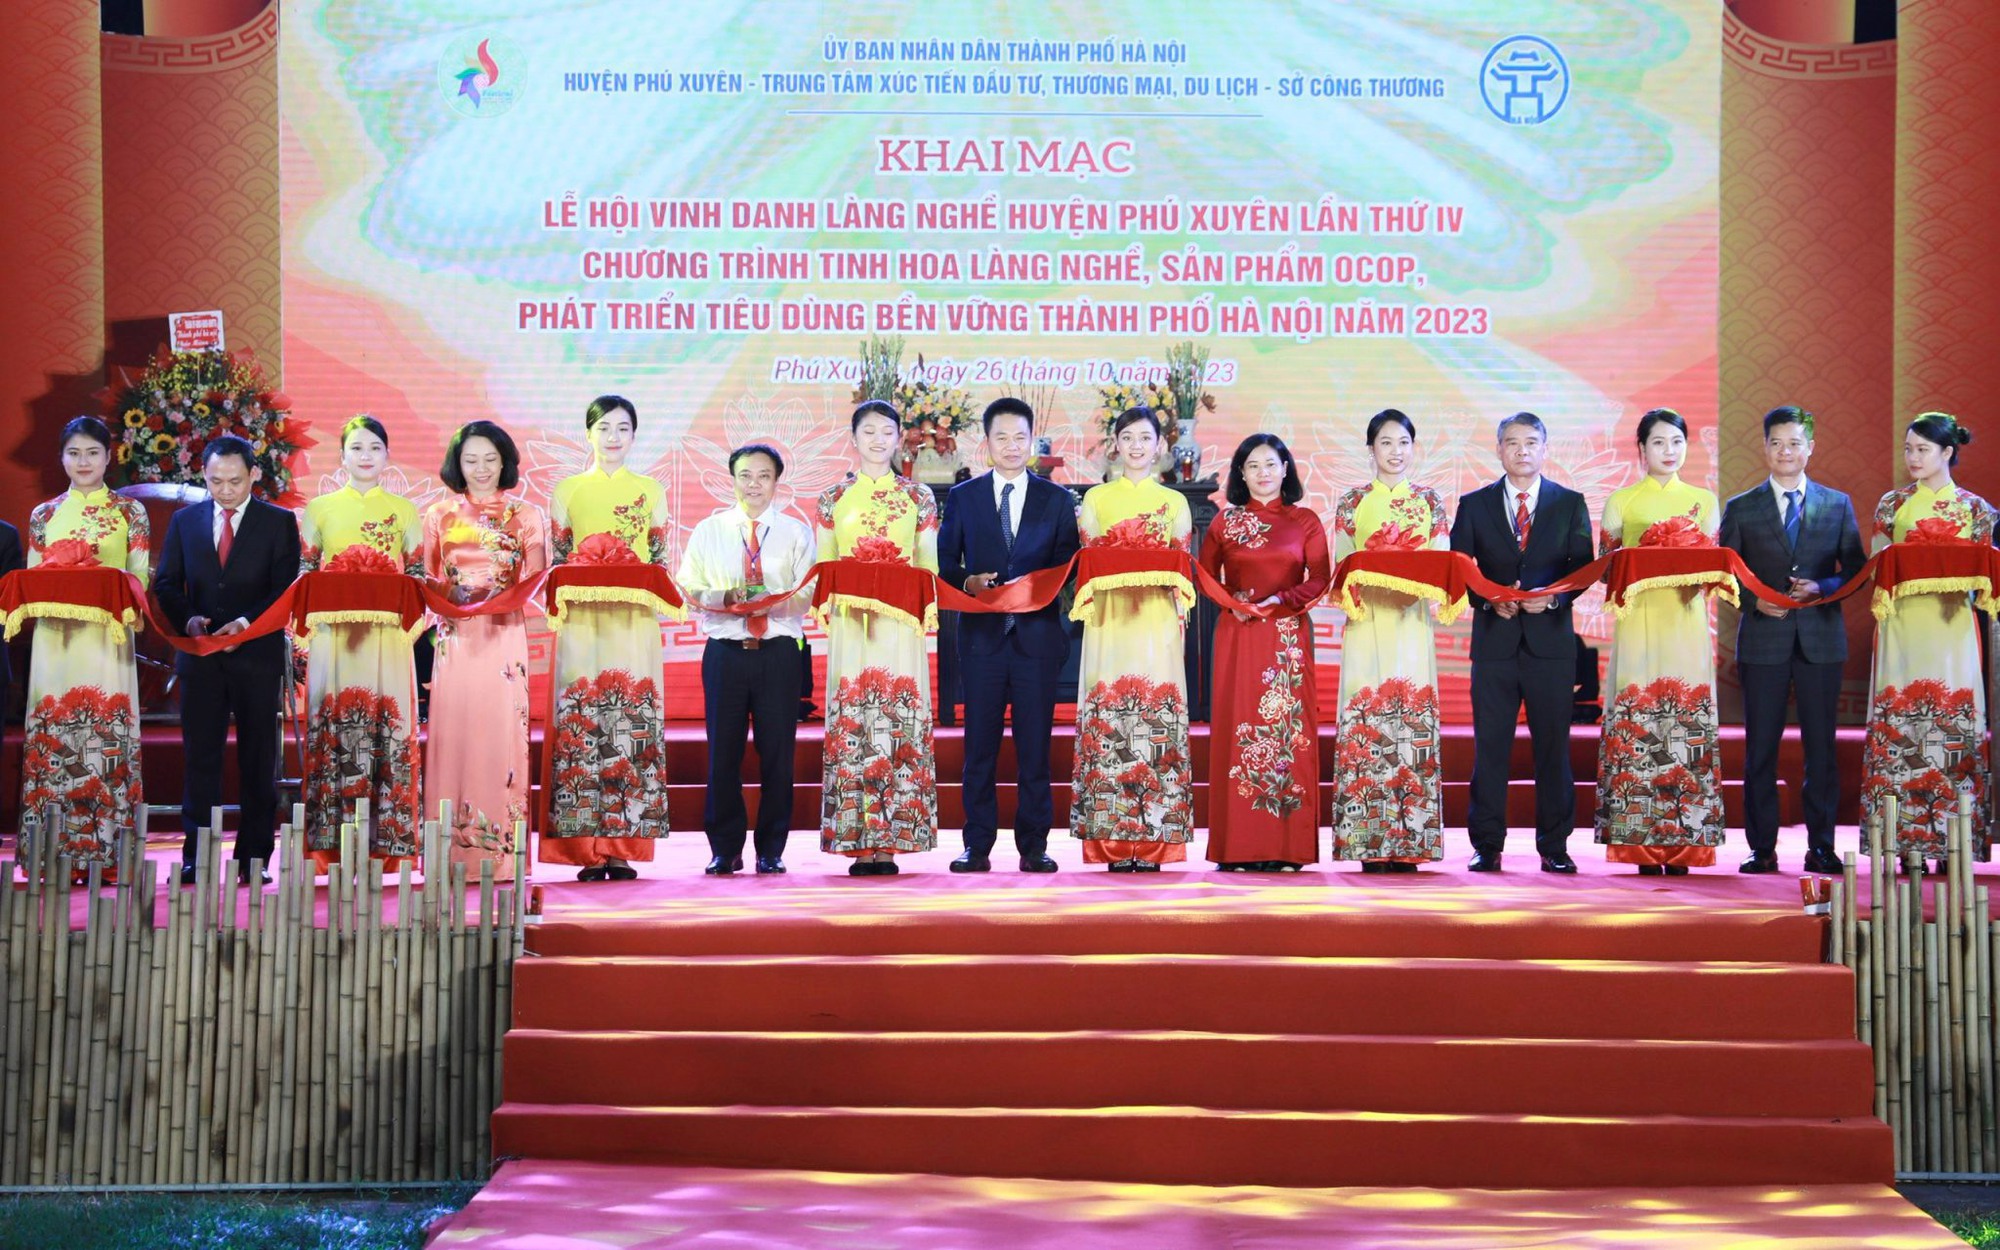 Hà Nội: 100 doanh nghiệp, 220 gian hàng tham gia Lễ hội vinh danh làng nghề huyện Phú Xuyên lần thứ IV năm 2023 - Ảnh 1.